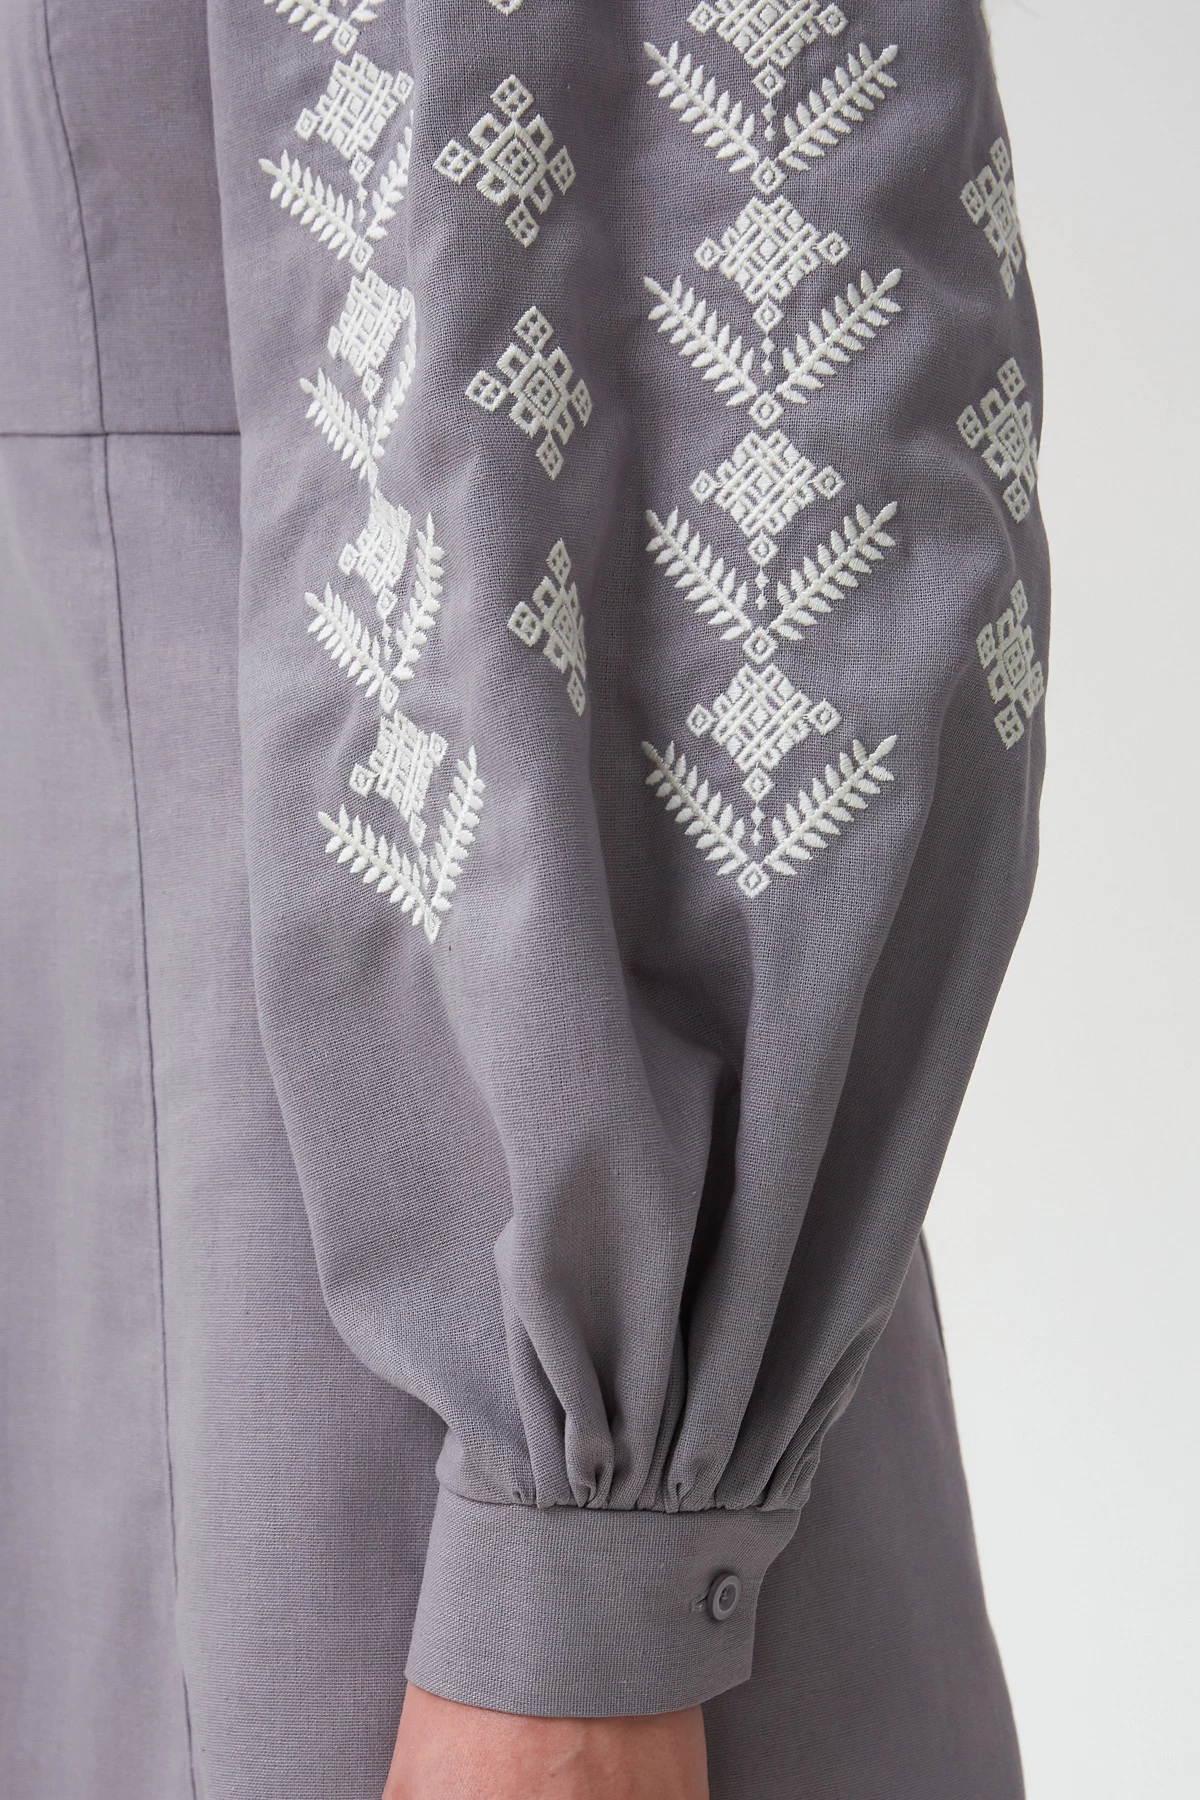 Сіра вишита сукня в орнамент ромби з льоном, фото 5